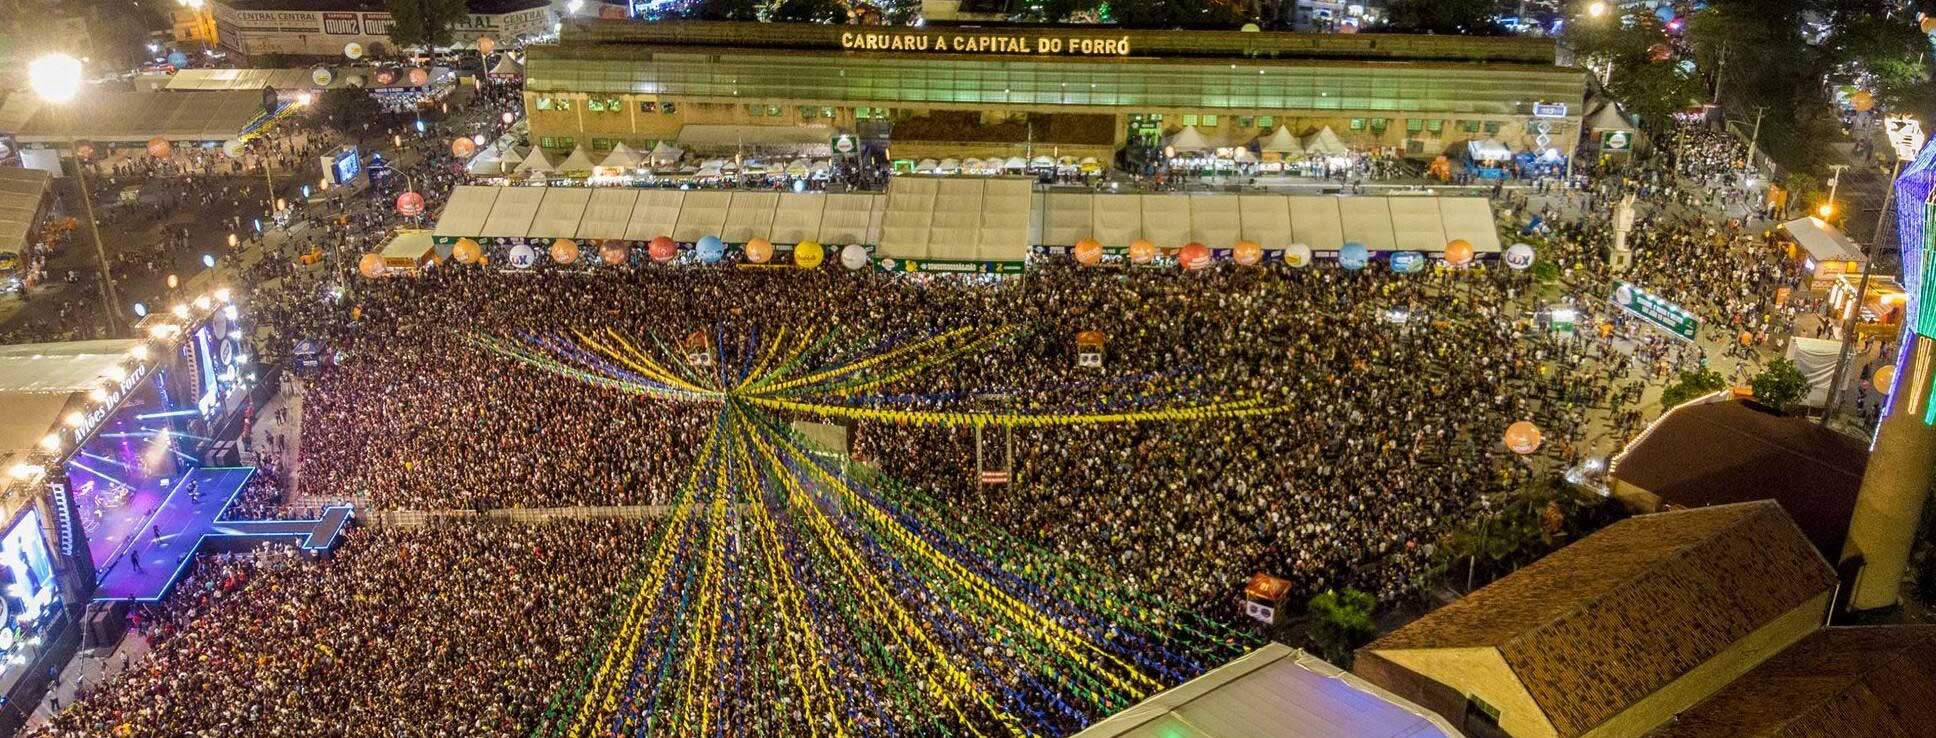 sao-joao-de-caruaru:-tudo-sobre-a-maior-festa-junina-do-brasil